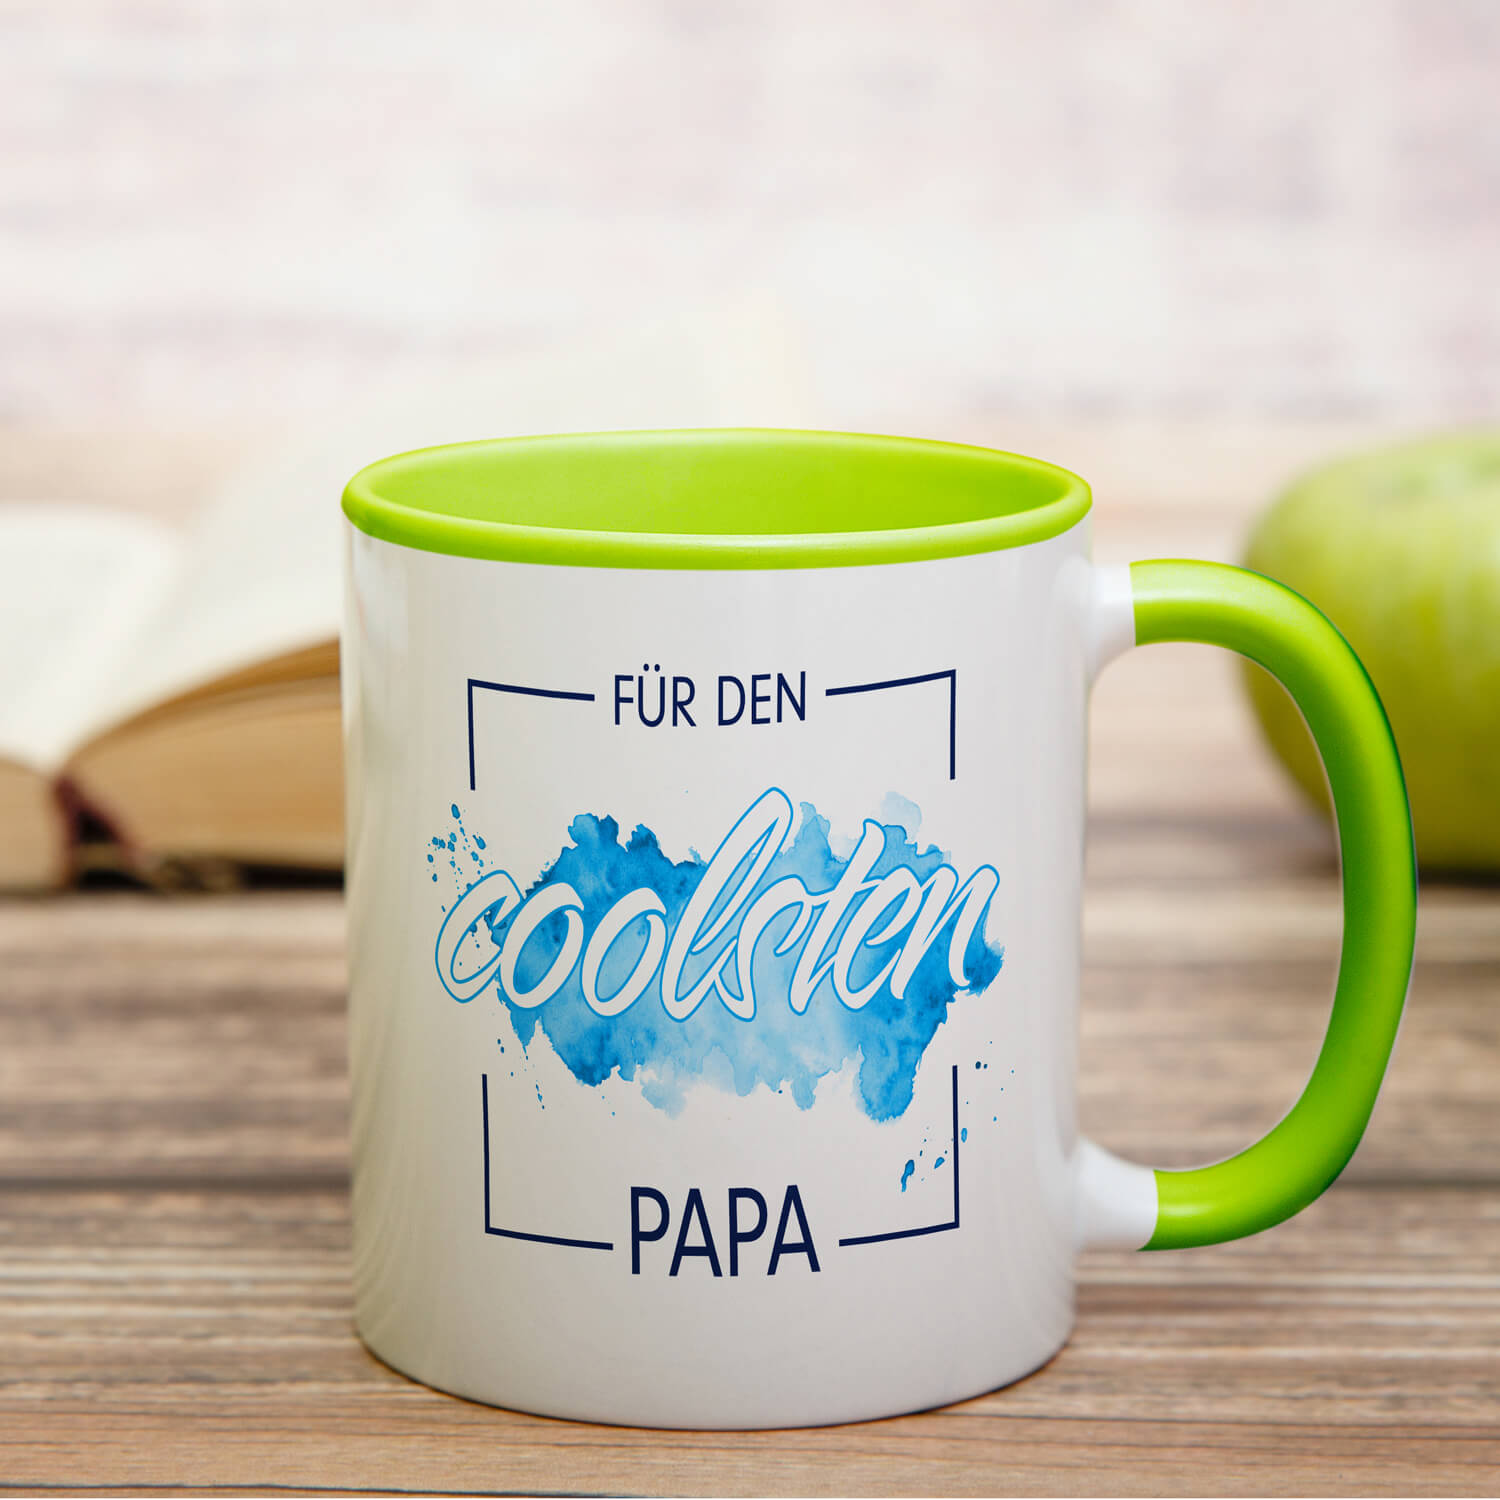 Tasse "Für den coolsten Papa"